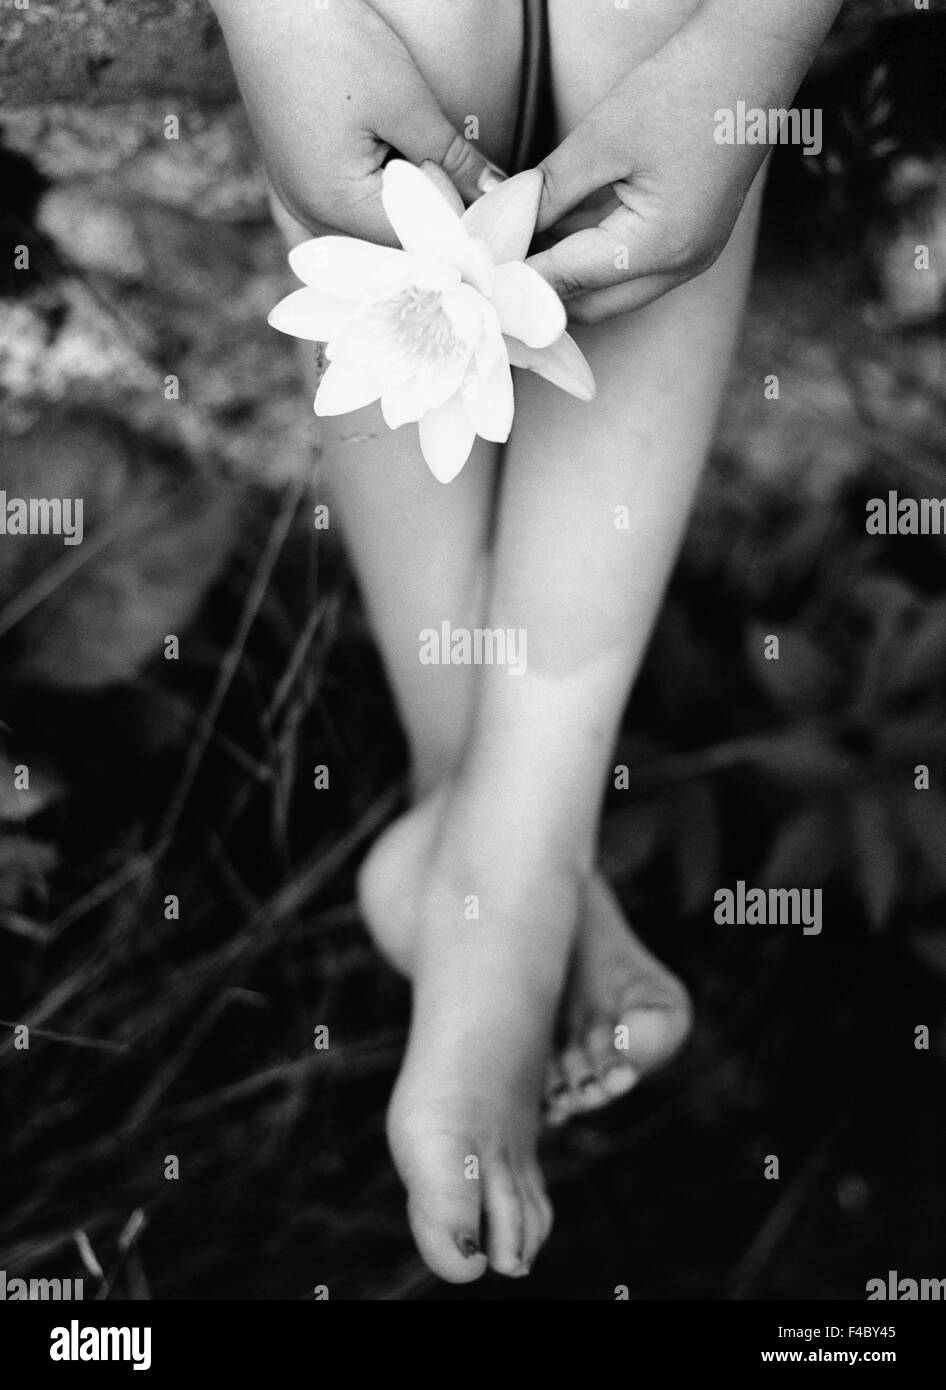 barfuß schwarz-weiß Teil Körperteil von Kindern nur in der Nähe von Natur konzeptionelle Blume menschlicher Fuß menschliche Hand Bein niedrig Stockfoto